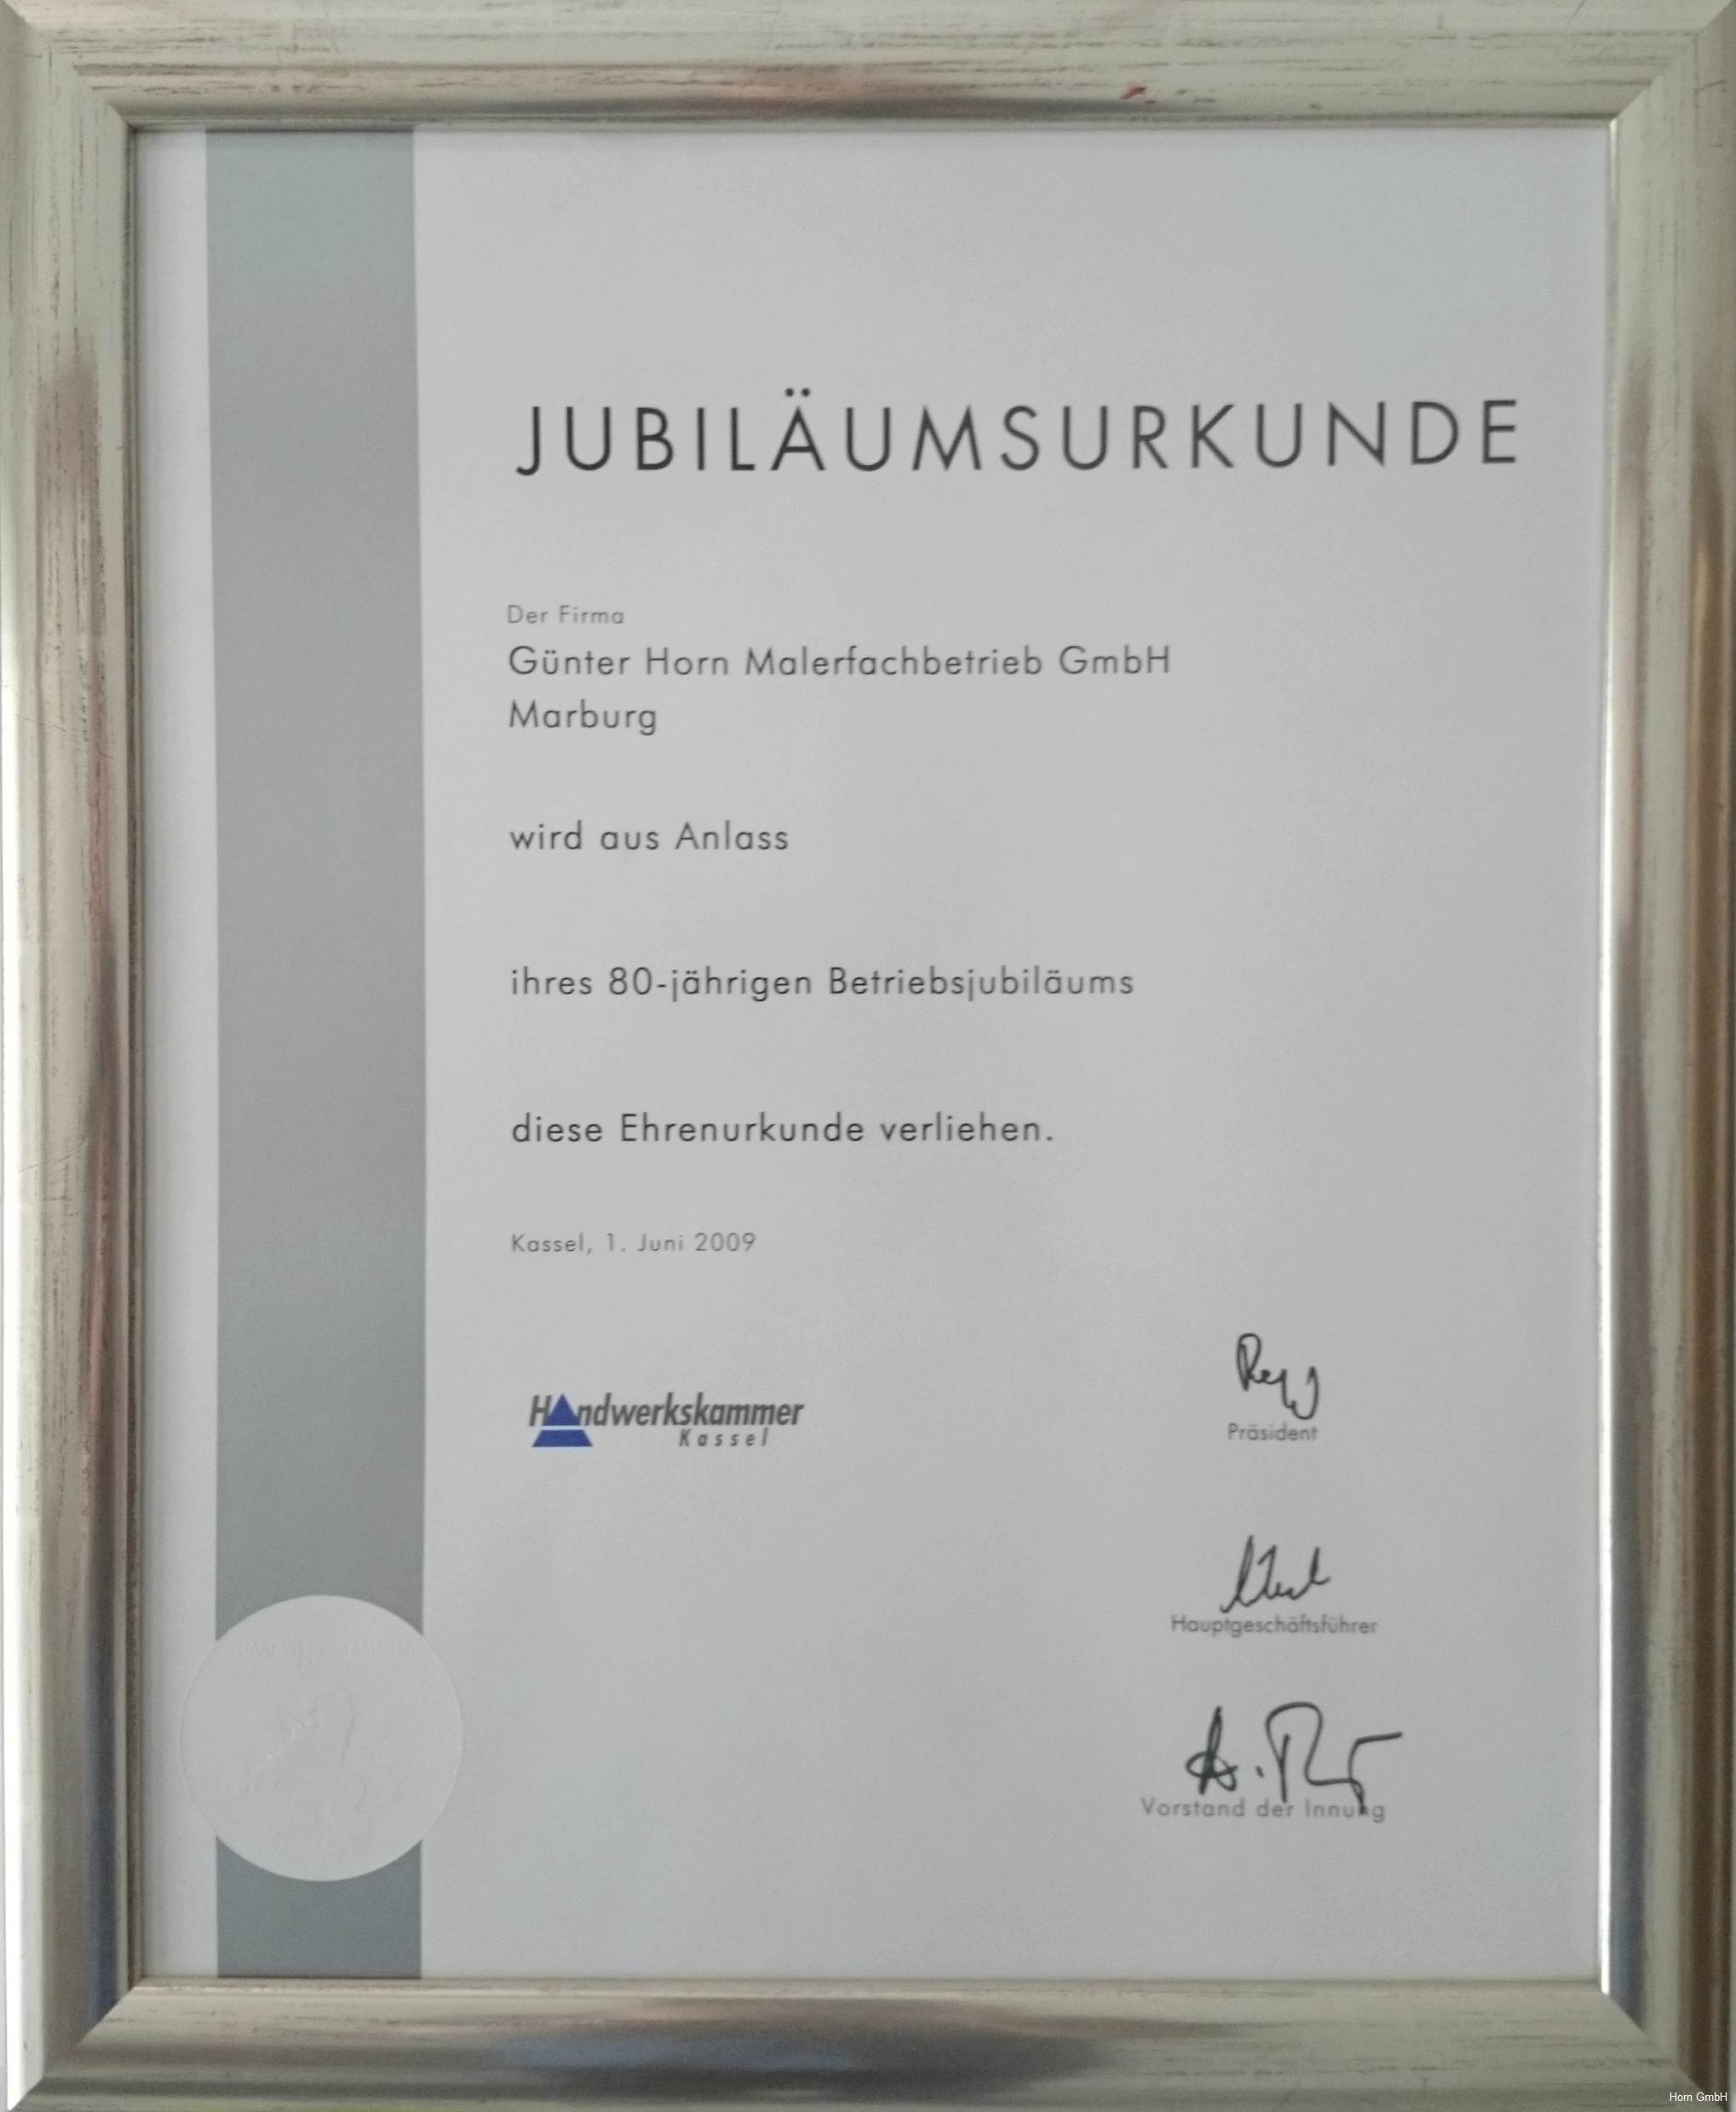 Jubiläumsurkunde 80 Jahre Horn Malerfachbetrieb GmbH